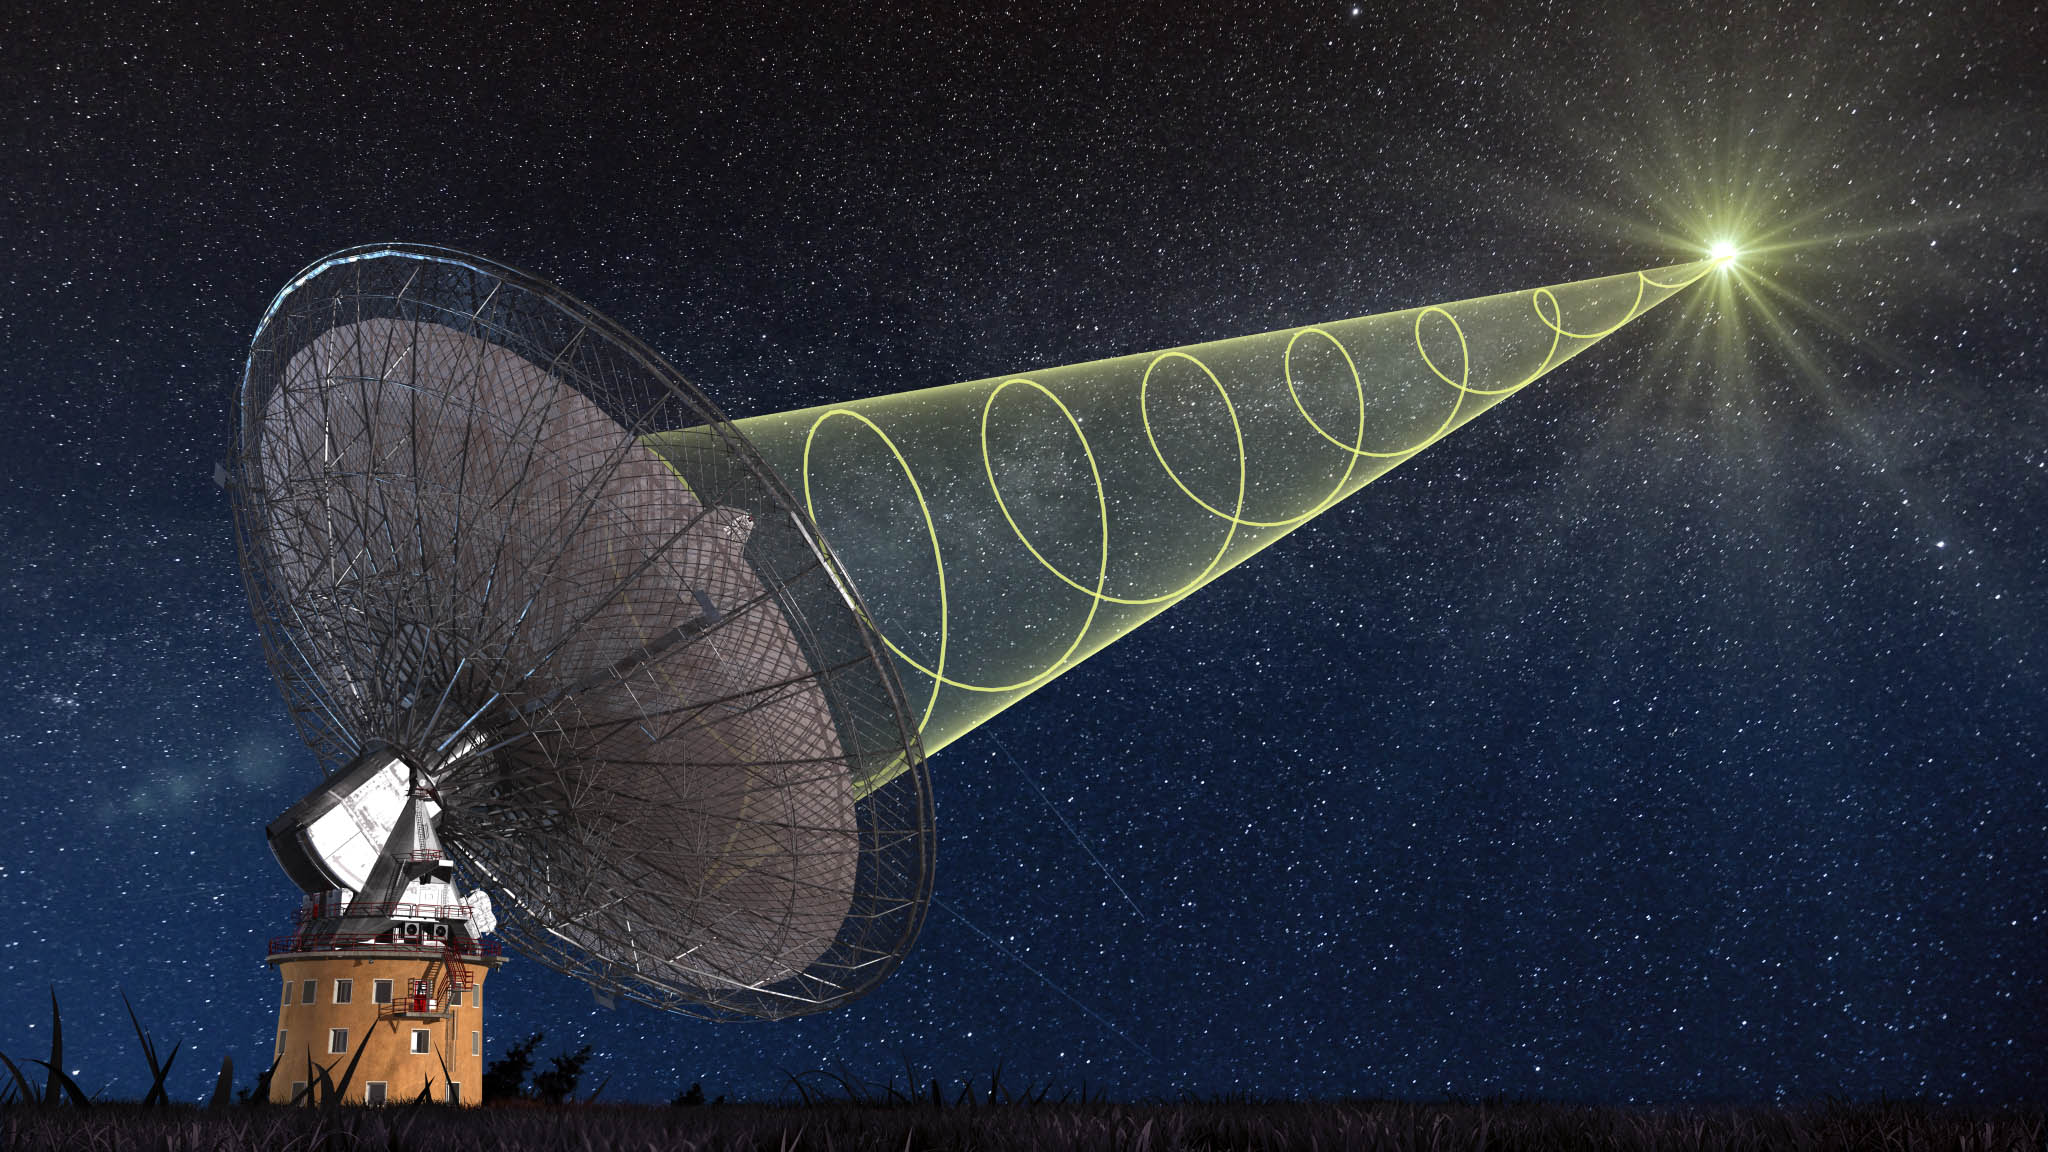 Le radiotélescope de Parkes, en Australie, a pu observer un sursaut radio rapide. Le signal radio est polarisé circulairement. Cela signifie que le champ électrique des ondes émises tourne autour de la direction de propagation de l'onde. © Swinburne Astronomy Productions